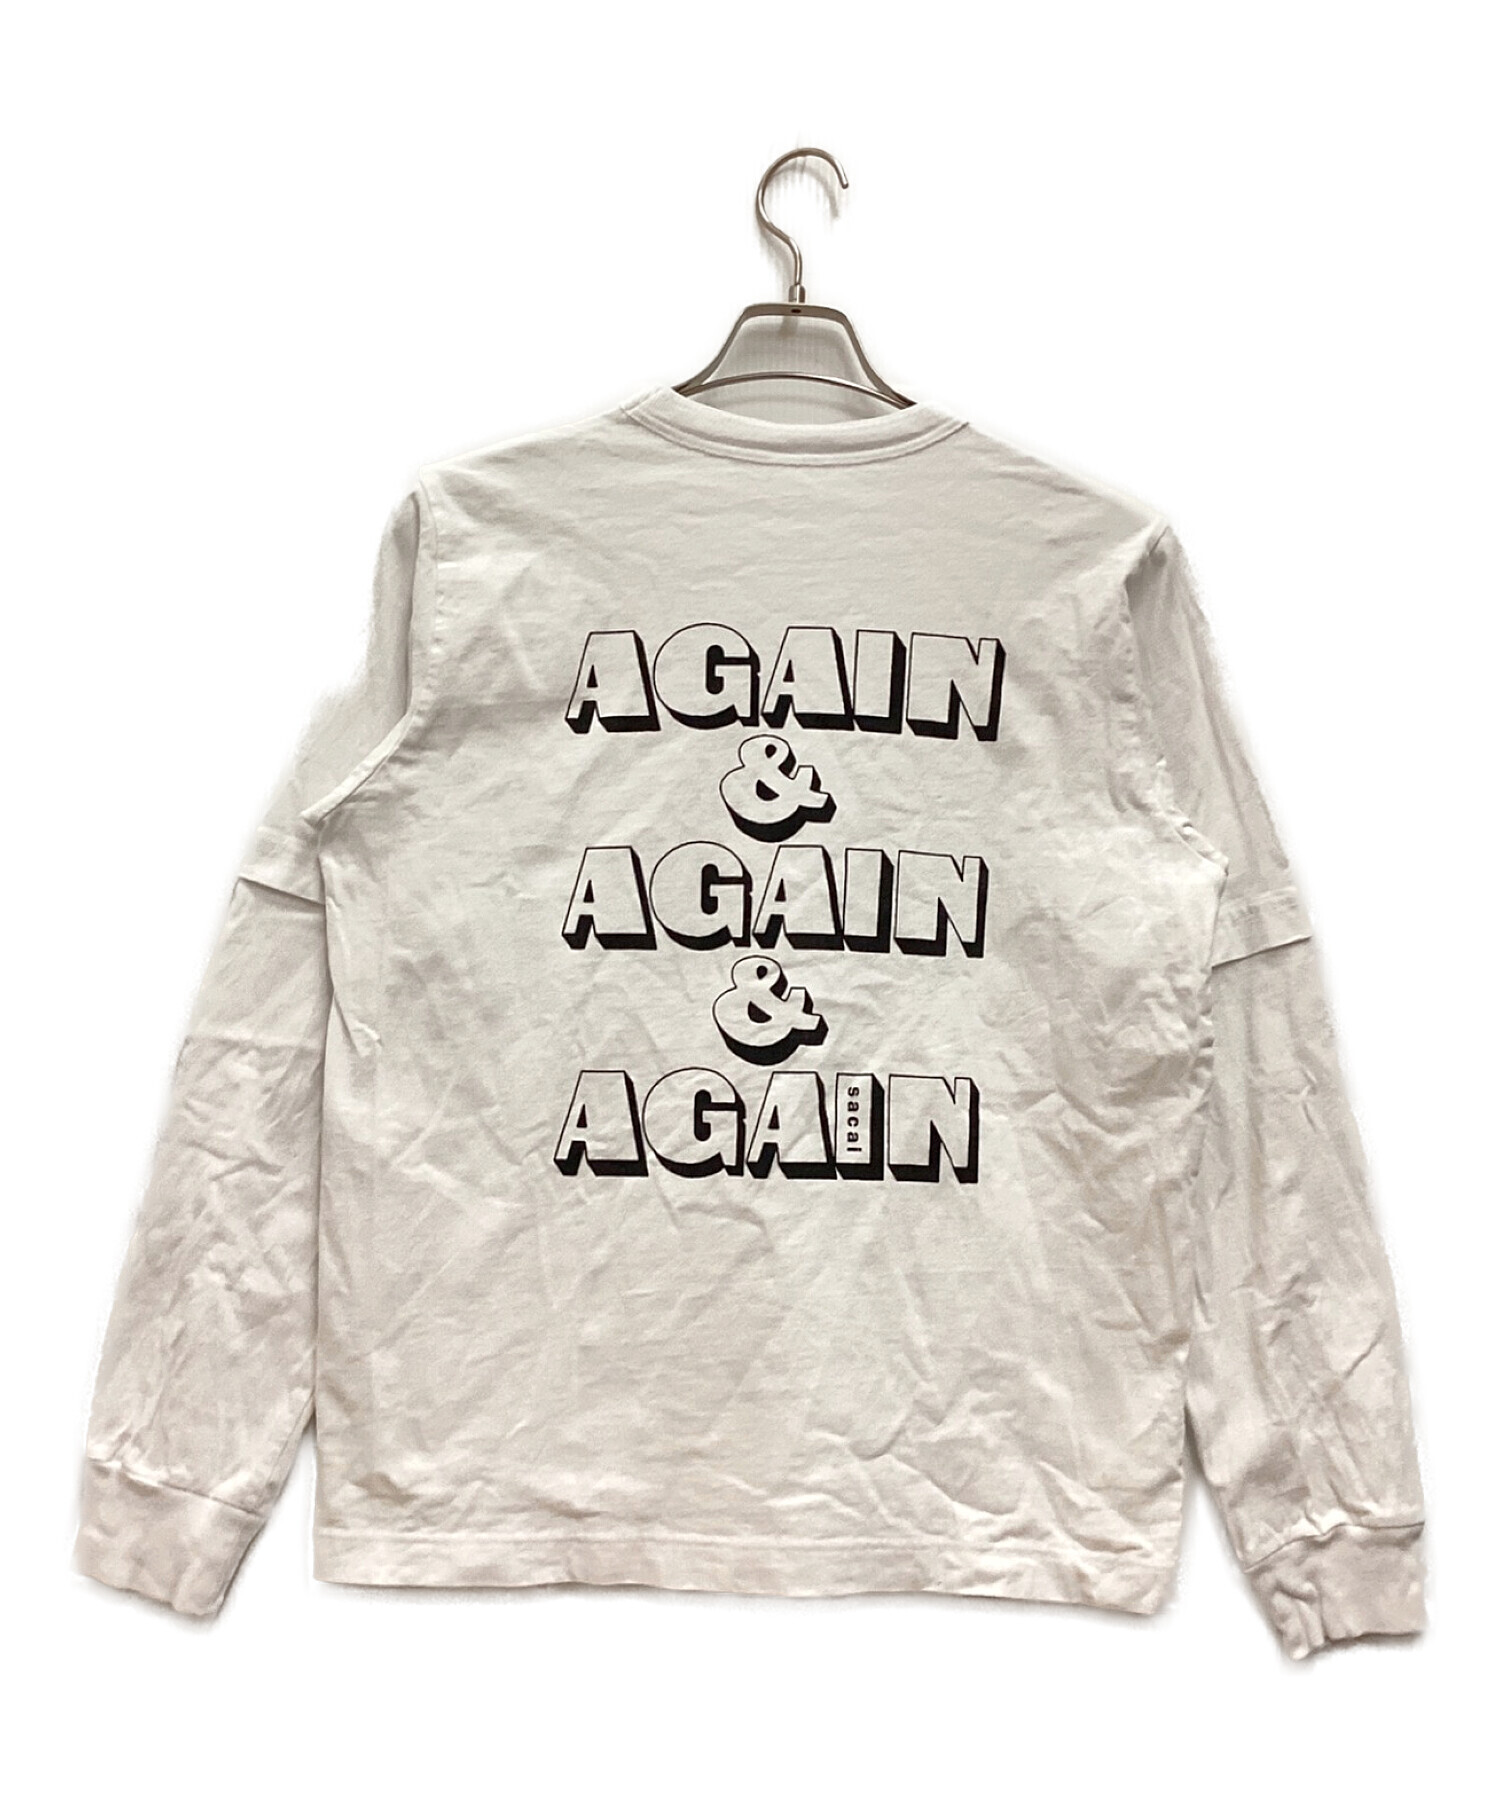 中古・古着通販】sacai (サカイ) AGAIN&AGAIN&AGAIN L/S T-Shirt